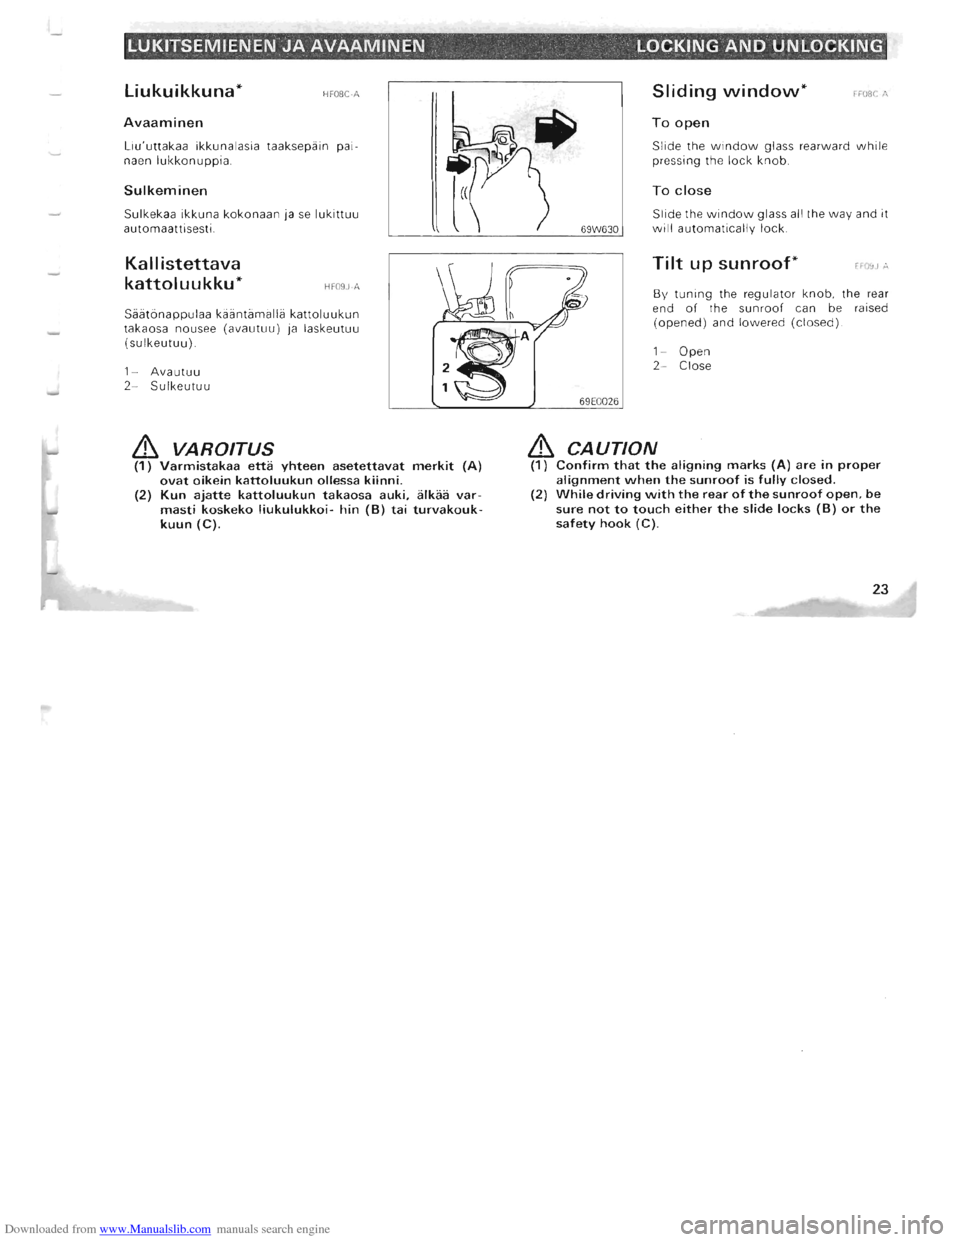 MITSUBISHI PAJERO 1996 2.G Owners Manual Downloaded from www.Manualslib.com manuals search engine LUKITSEMIENEN JA AVAAMINEN LOCKING AND UNLOCKING 
Liukuikkuna* HFOSC-A 
Avaaminen 
Liuuttakaa ikkun alasia  taaksepain  p ai­
naen lukkonuppi